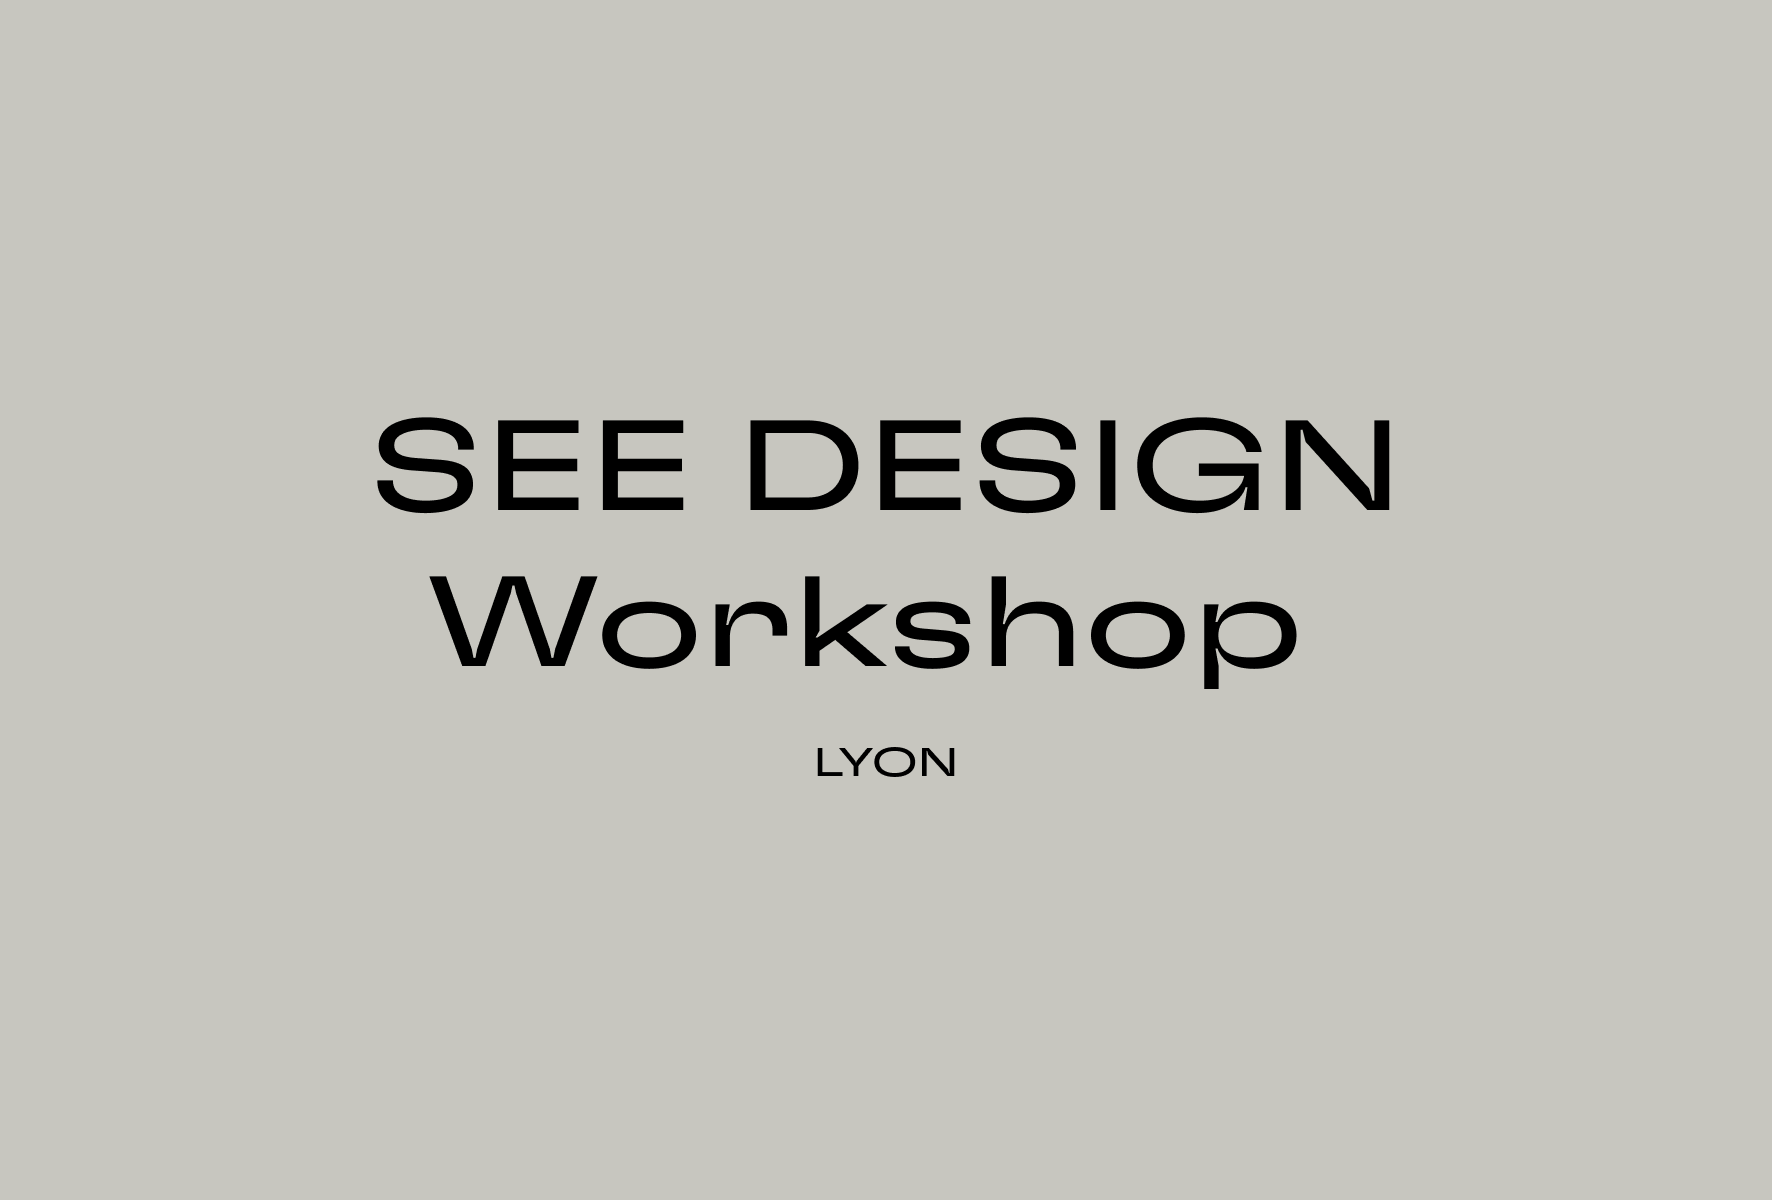 SEE Design Workshop in Lyon